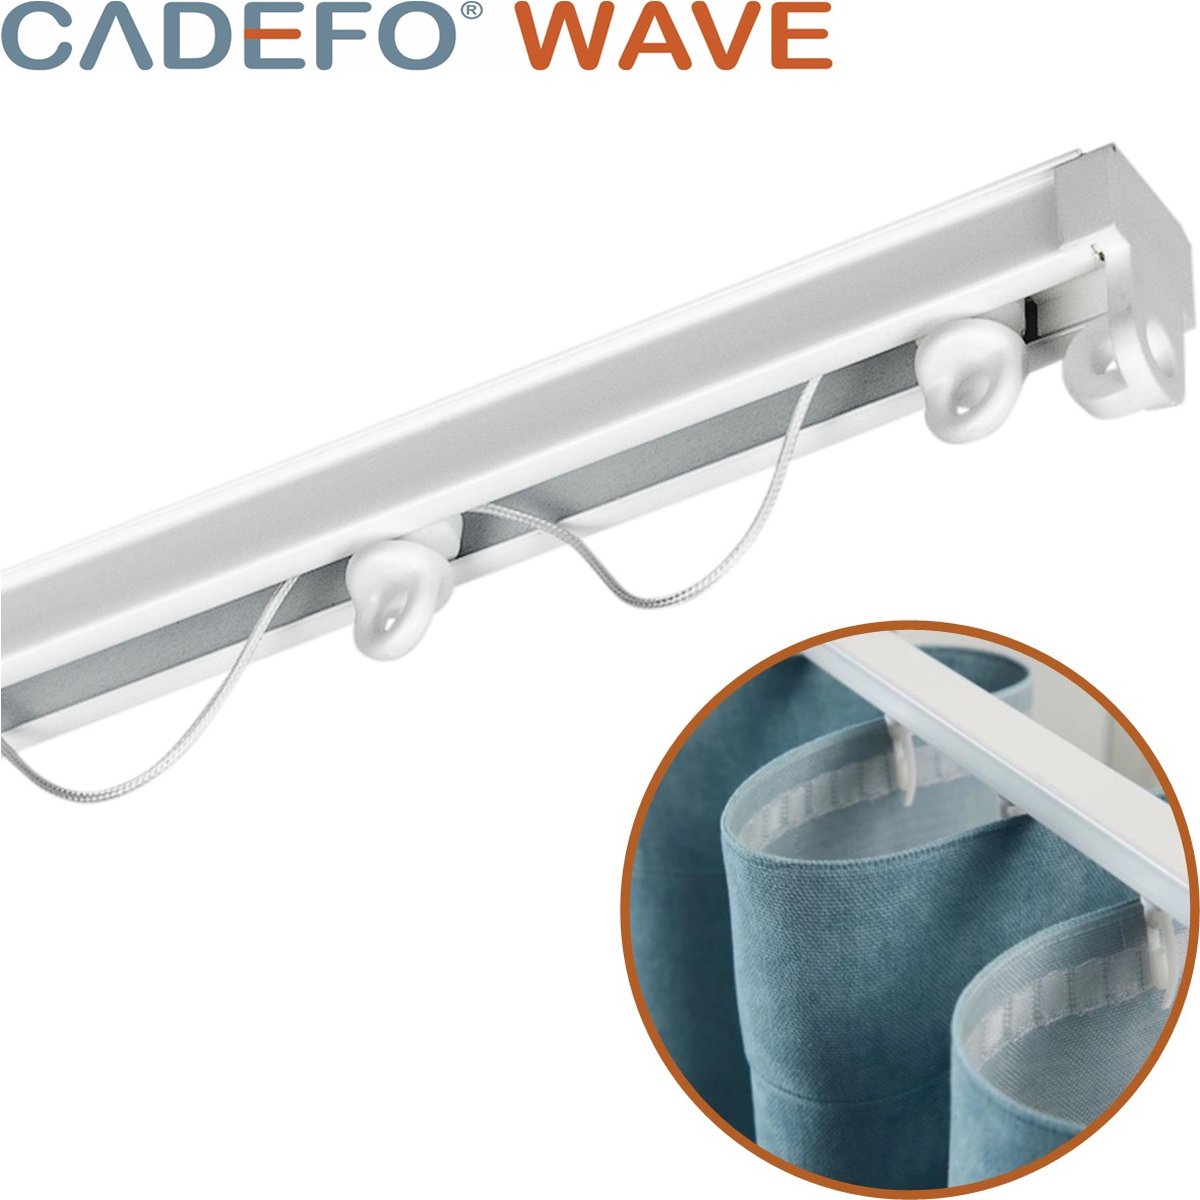 CADEFO WAVE (151 - 200 cm) Gordijnrails - Compleet op maat! - UIT 1 STUK - Leverbaar tot 6 meter - Plafondbevestiging - Lengte 173 cm